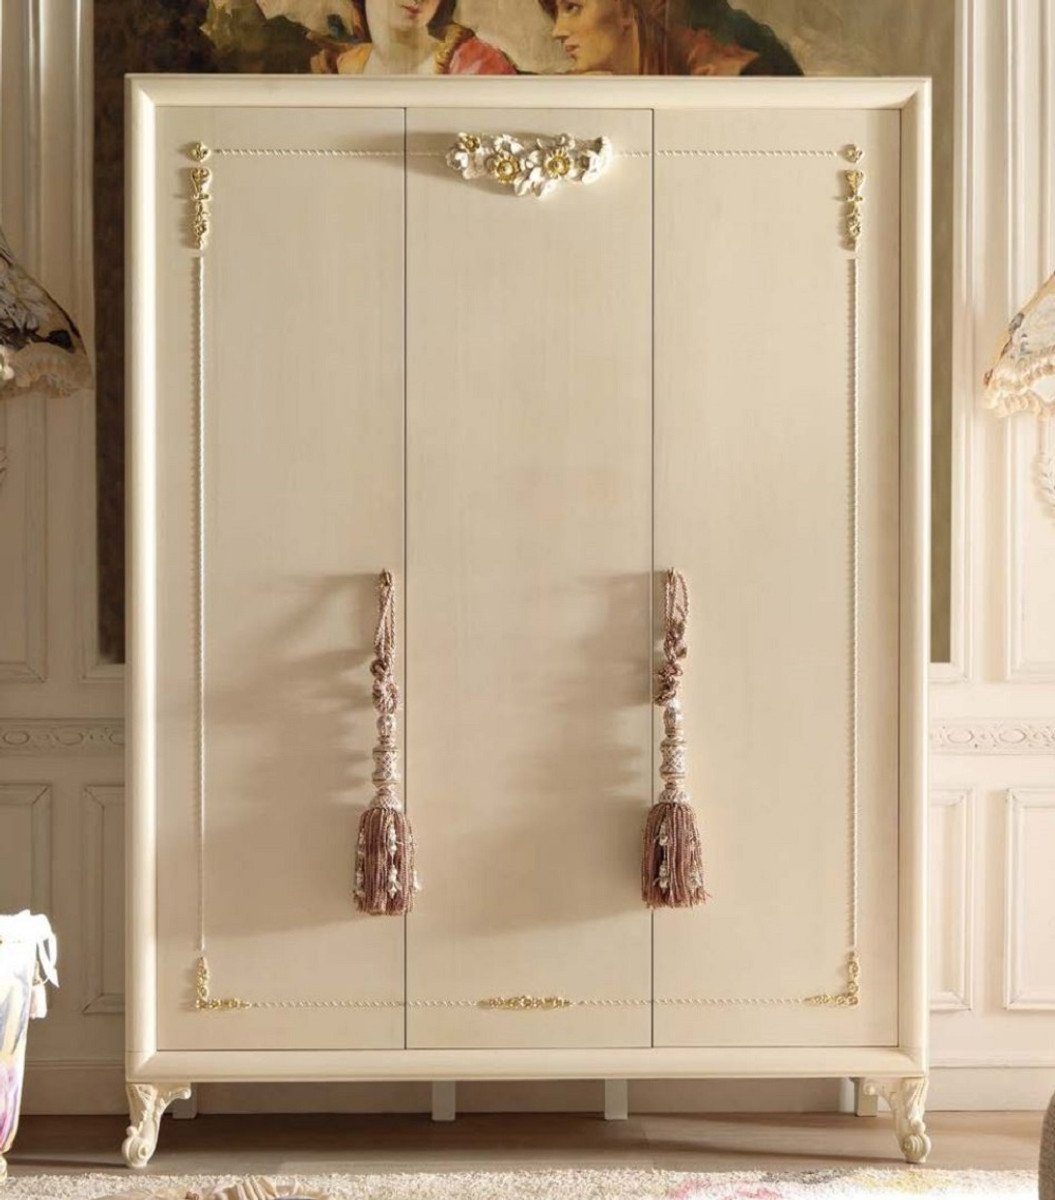 Casa Padrino Kleiderschrank Luxus Barock Schlafzimmerschrank Cremefarben / Gold - Handgefertigter Kleiderschrank mit 3 Türen - Barock Schlafzimmer Möbel - Luxus Qualität - Made in Italy | Kleiderschränke